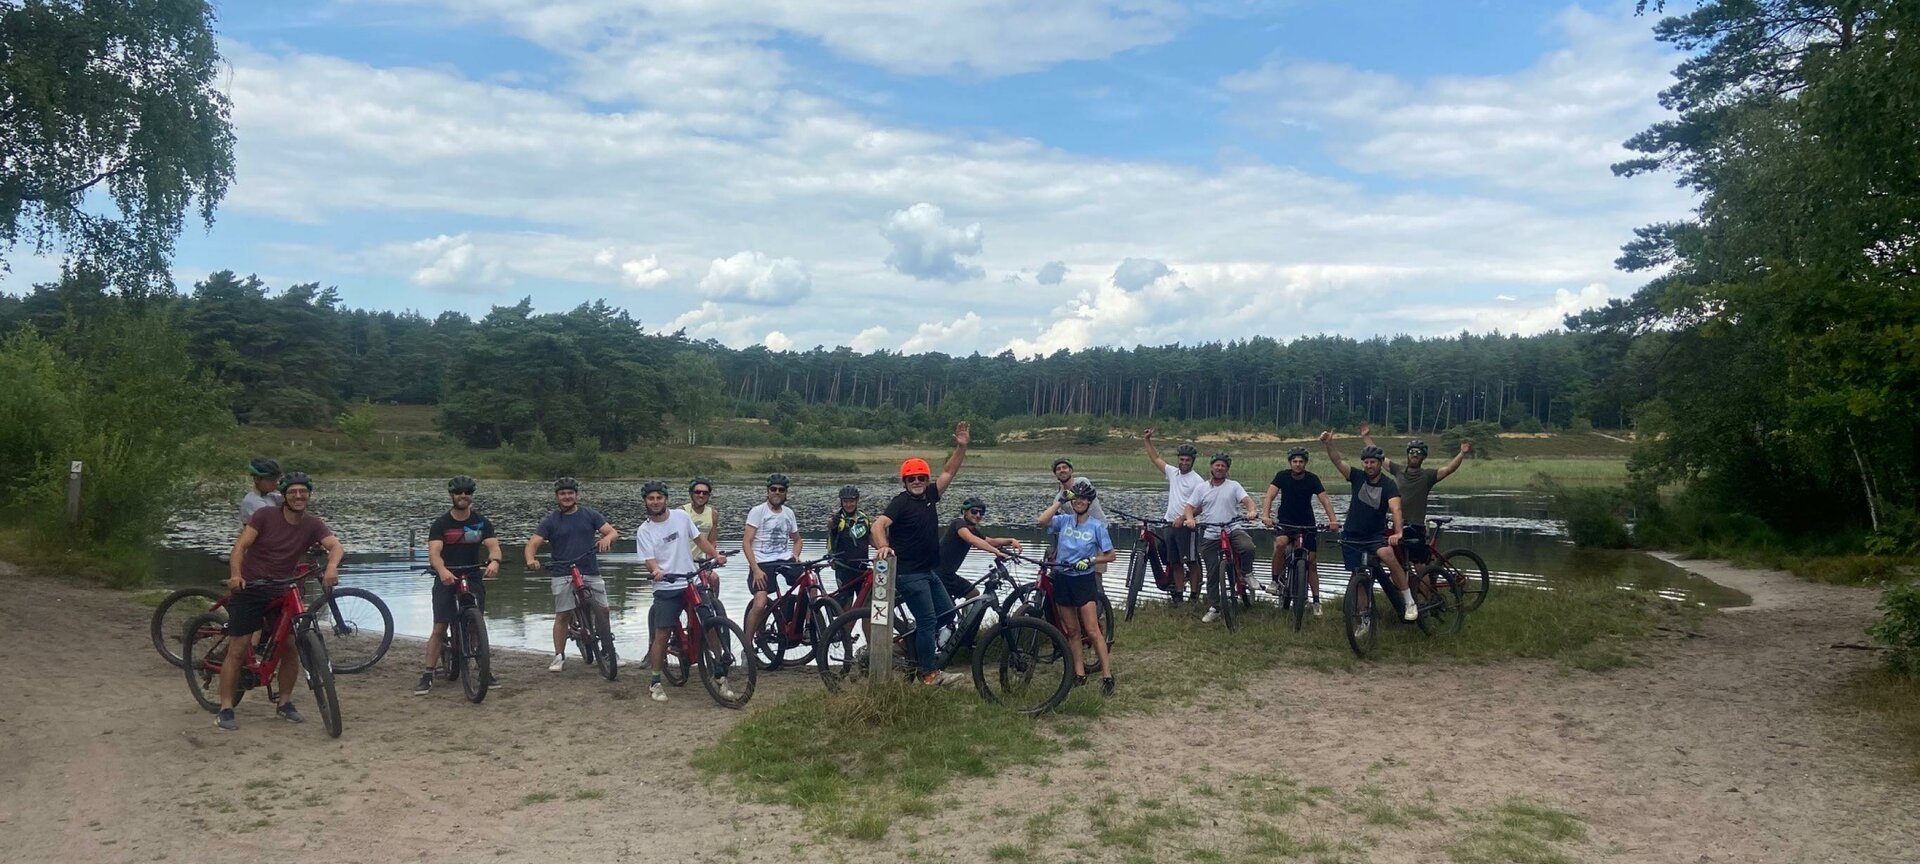 Bike & Outdoor Sport Center - Mtb & E-mtb tour in Park Midden Limburg